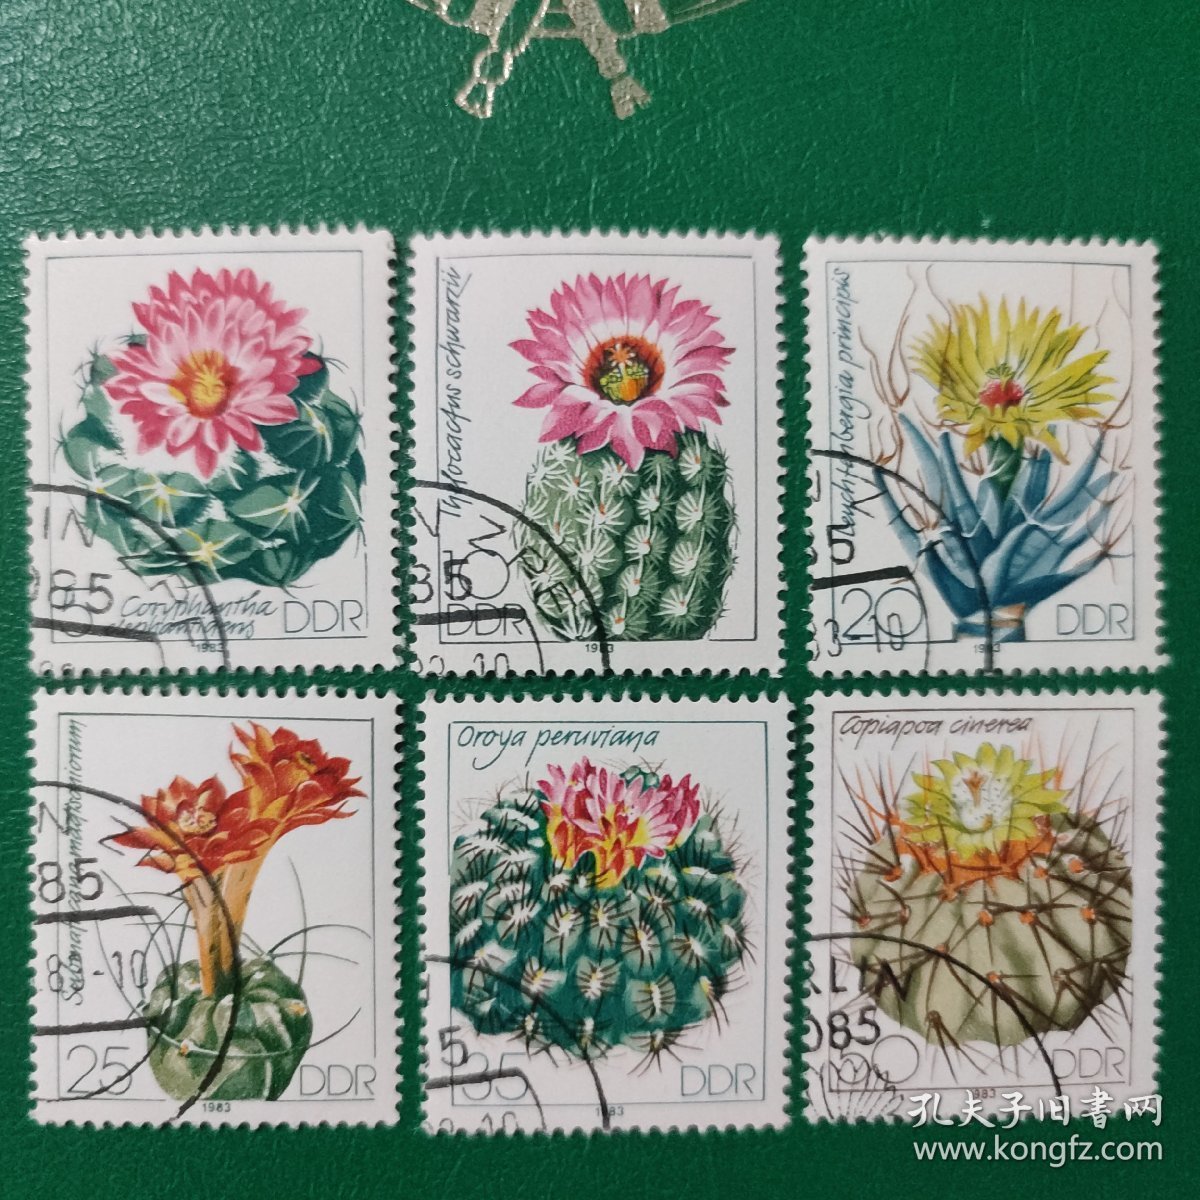 德国邮票 东德 1983年仙人掌 6全销